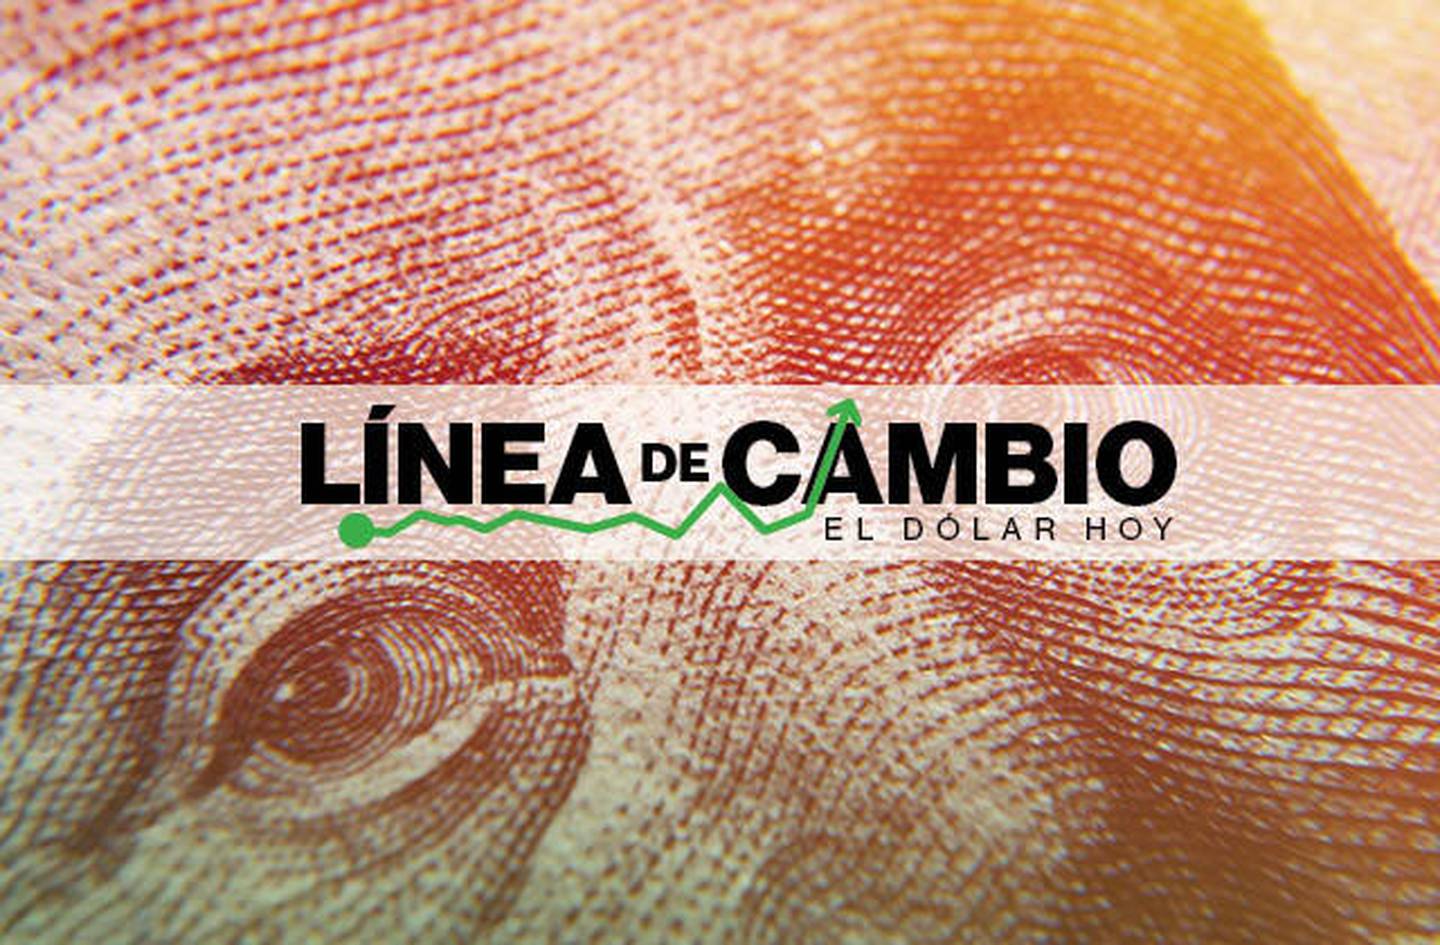 Dólar hoy: Monedas de Latinoamérica se fortalecen frente a la divisa de EE.UU.